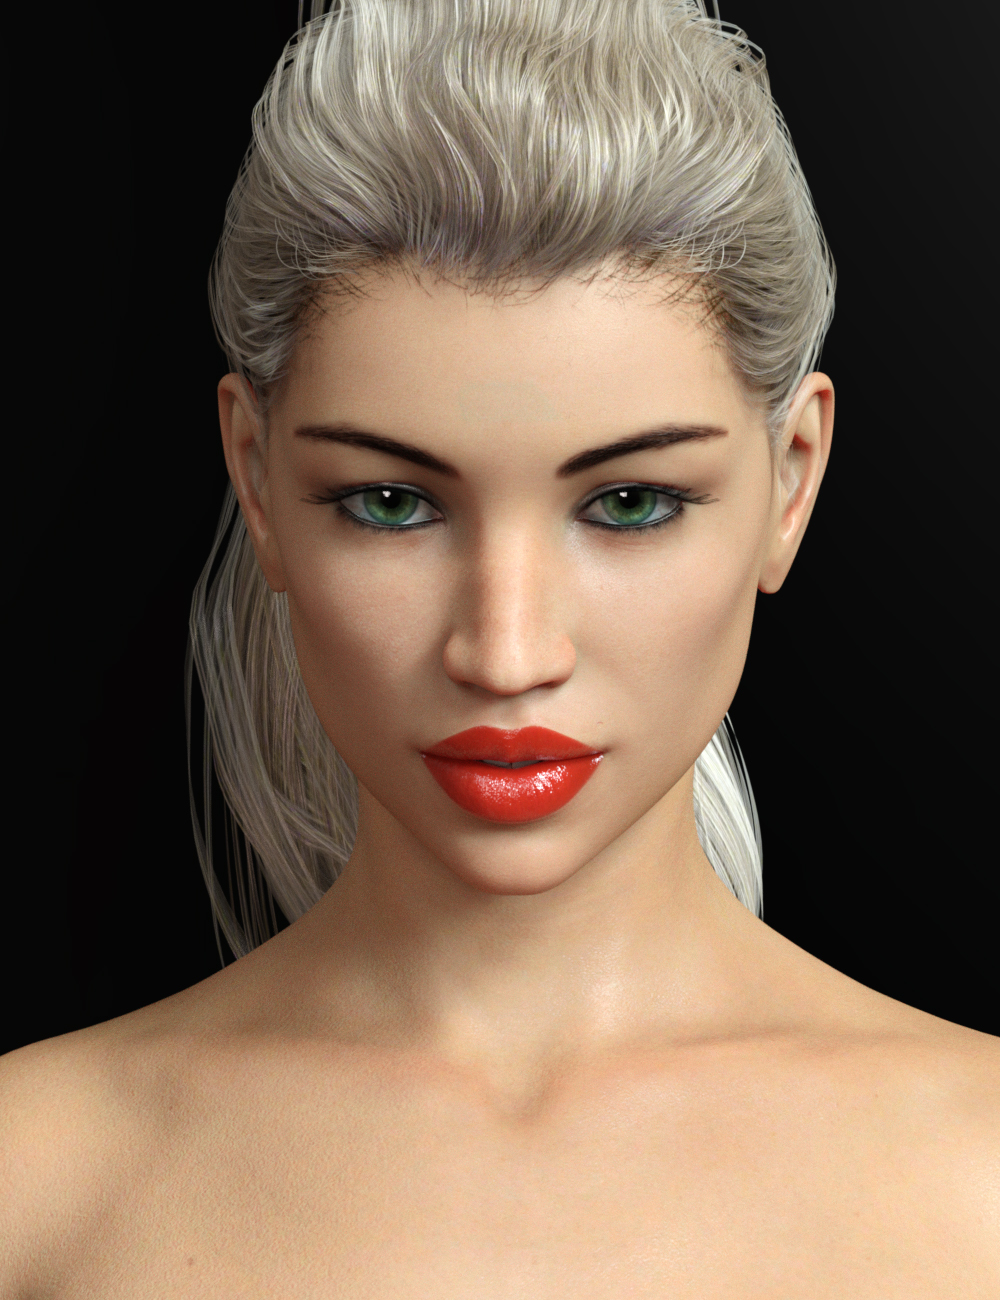 FW Kacia HD for Olympia 8 by: Fred Winkler ArtSR3, 3D Models by Daz 3D